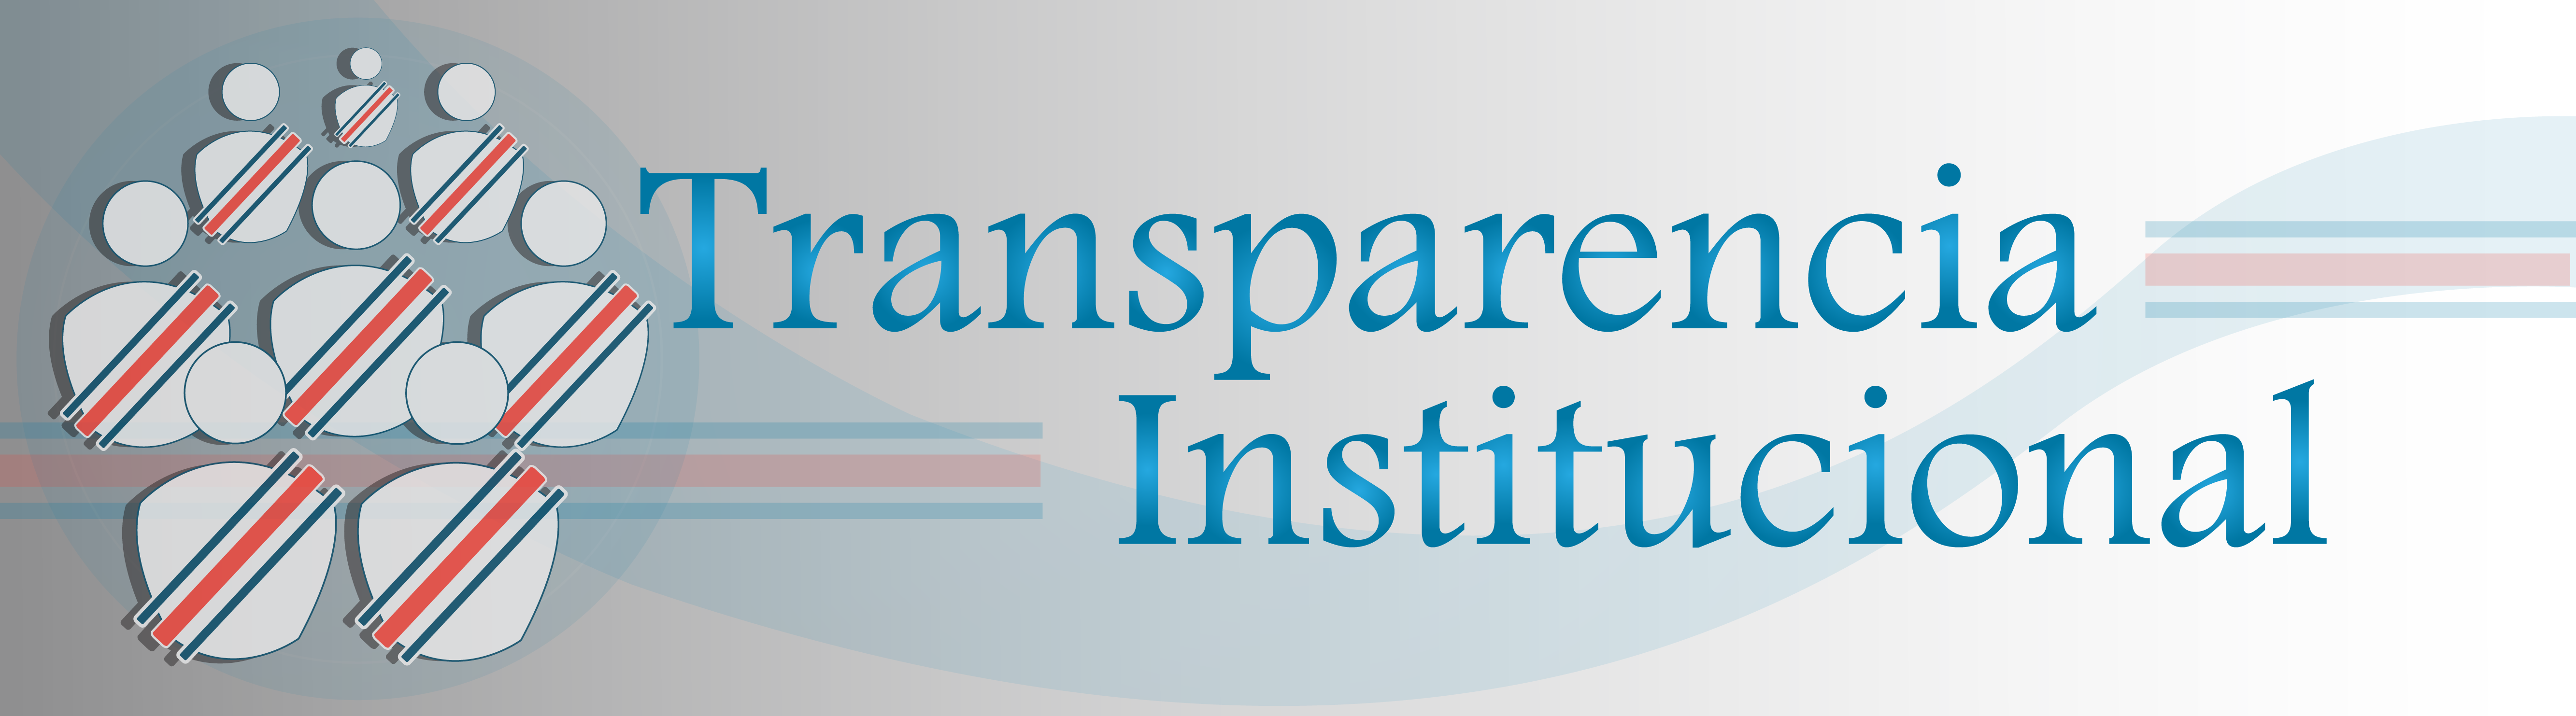 Red de Transparencia Institucional